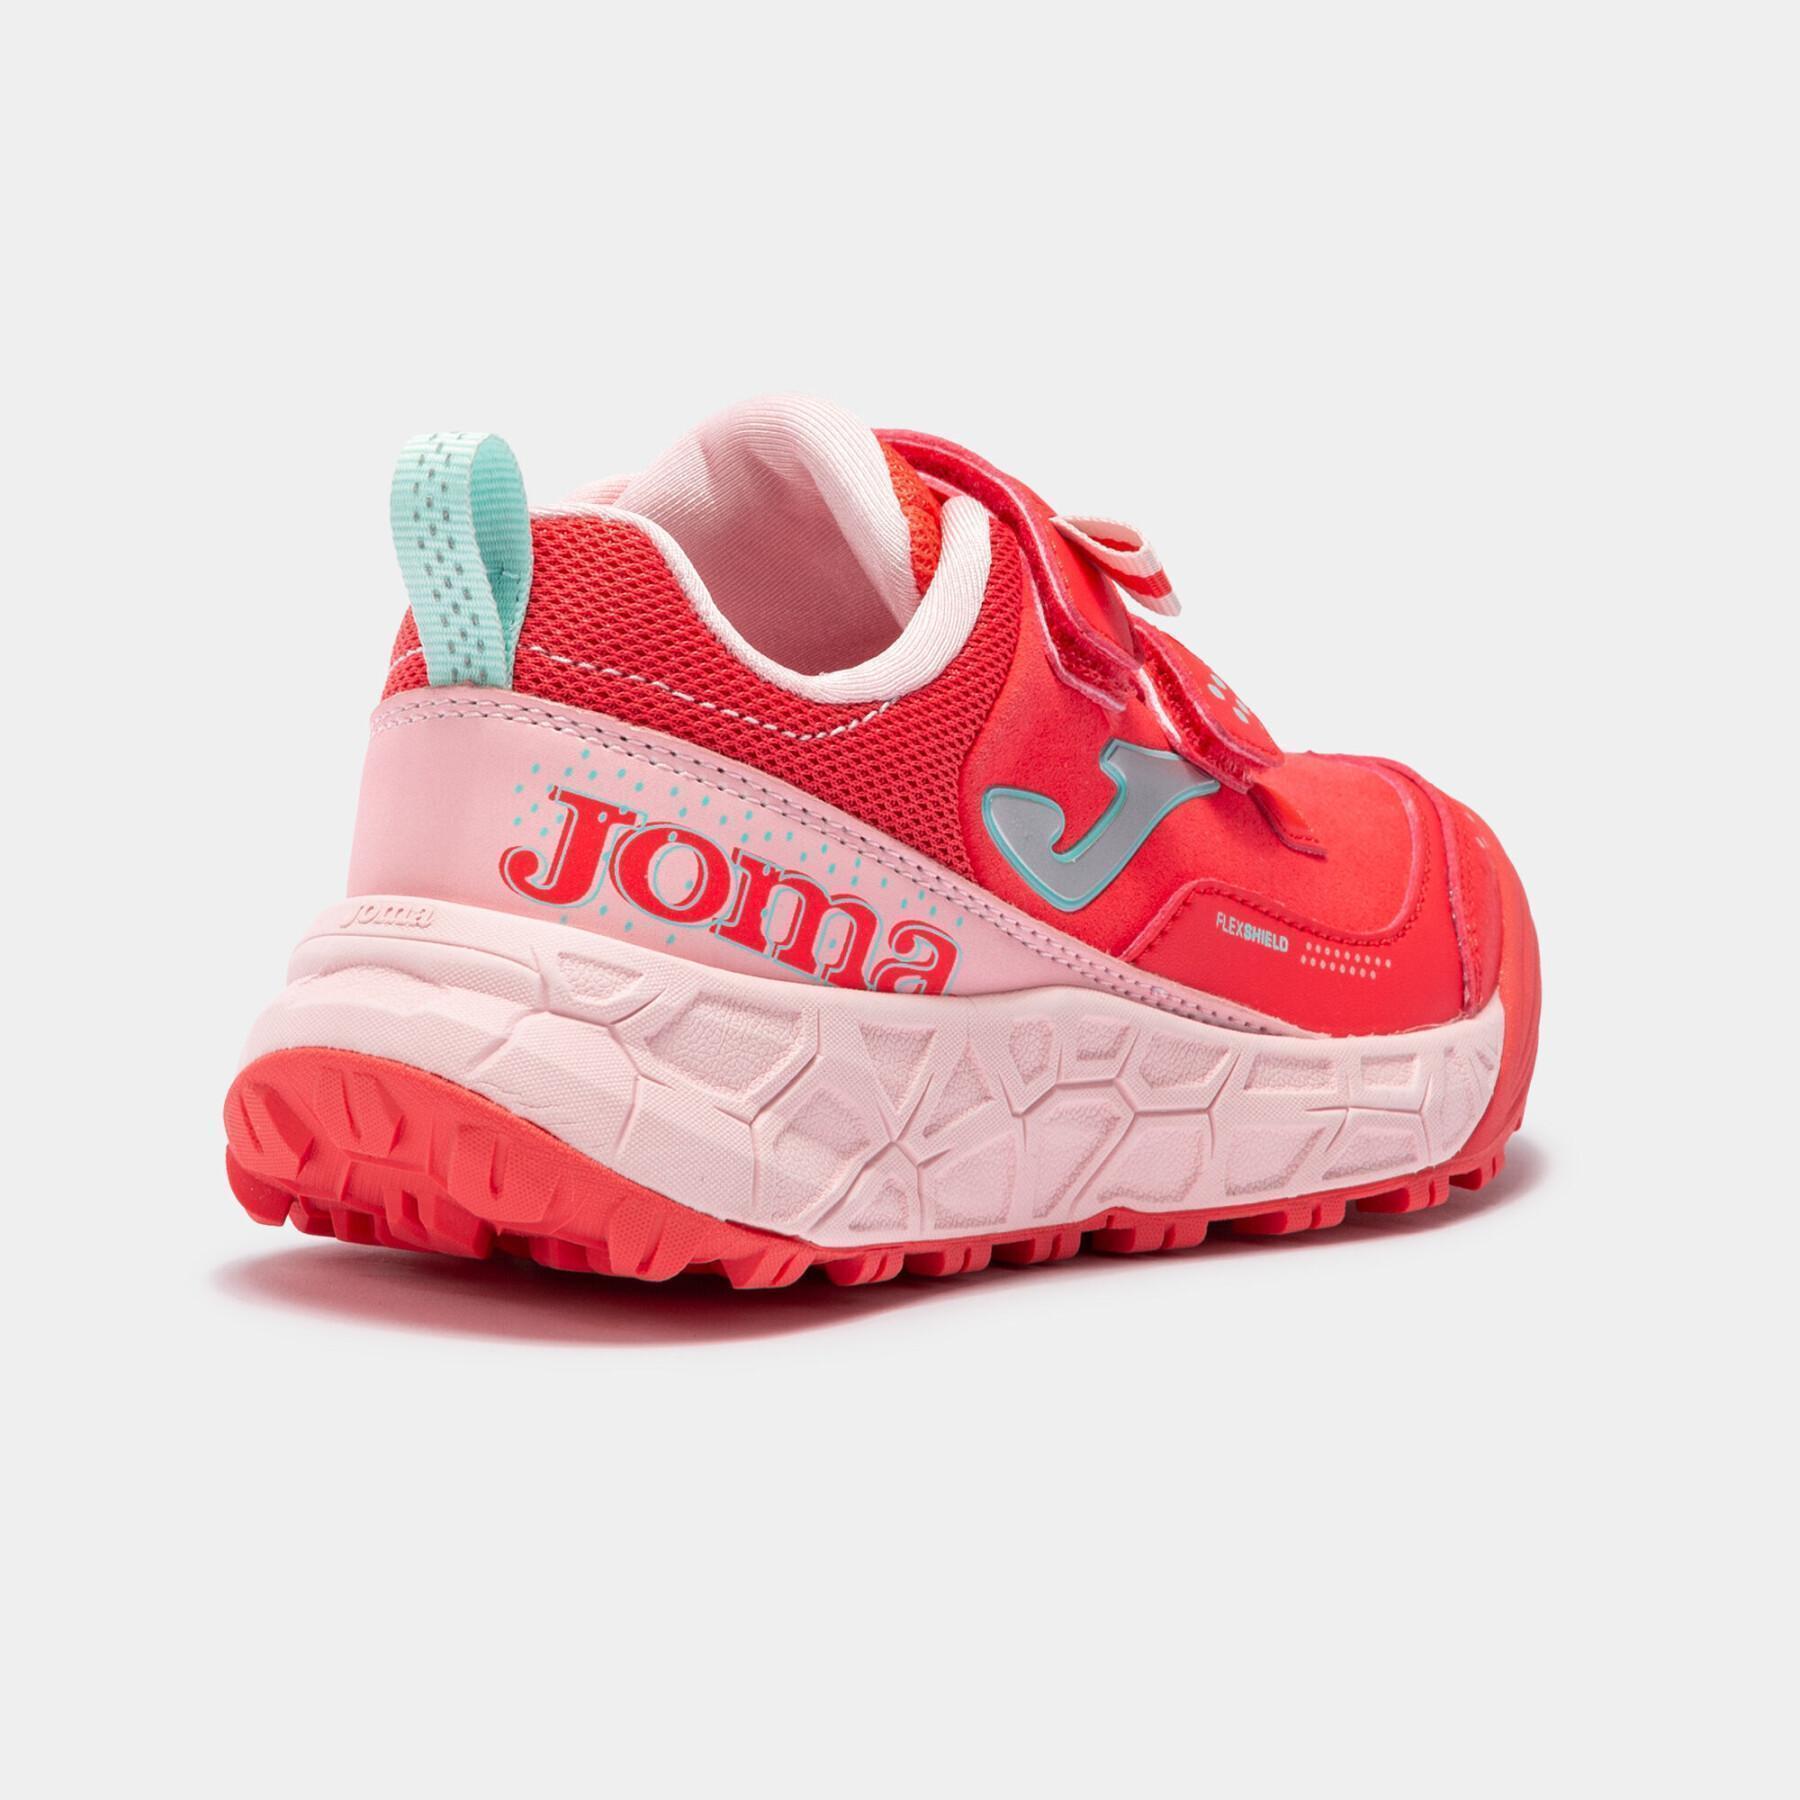 Schuhe von running Kind Joma J.Adventure